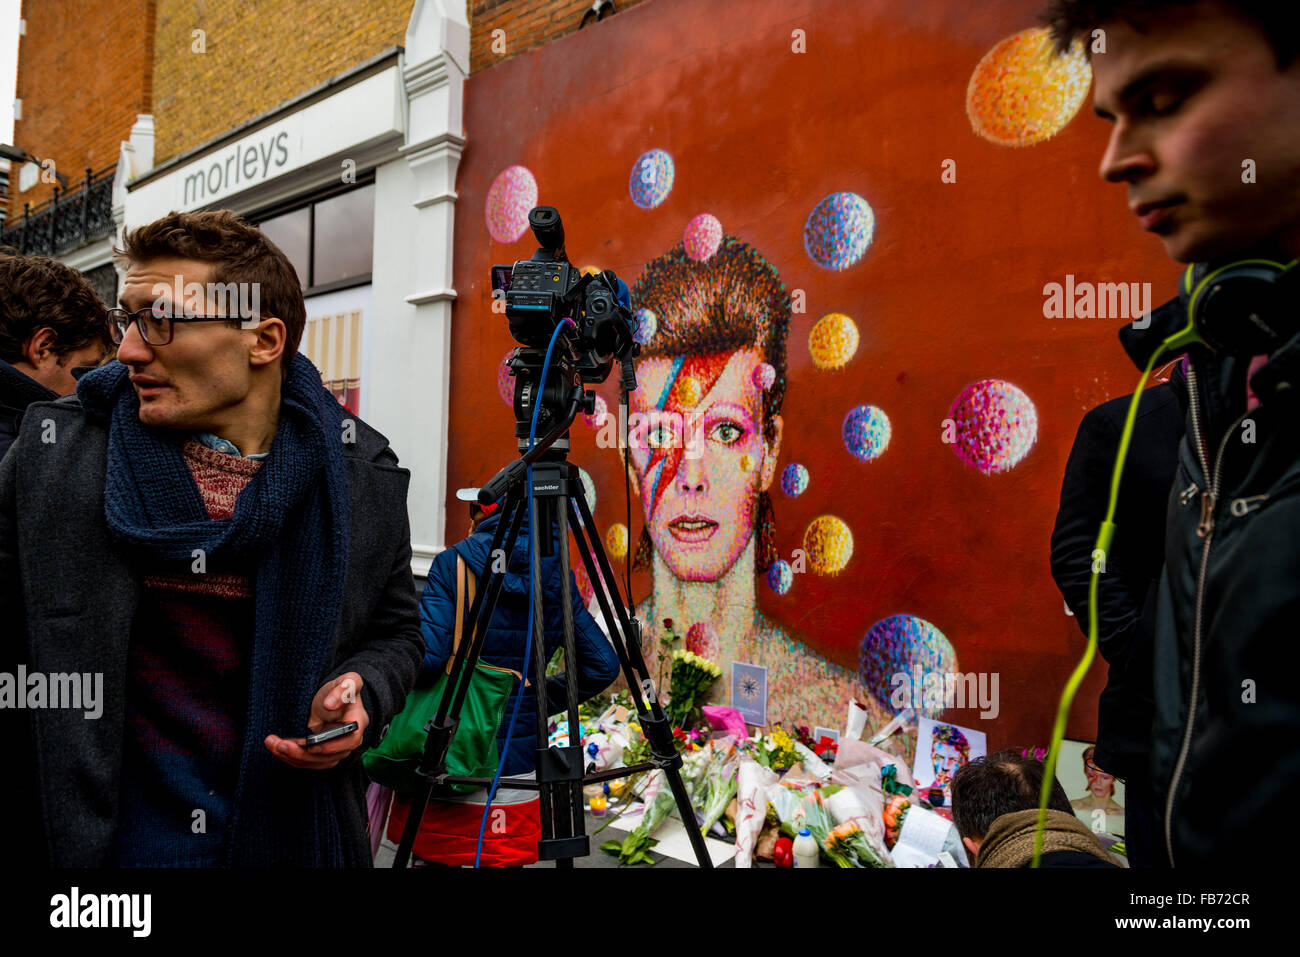 El 11 de enero, 2016 - Londres, Reino Unido - londinenses rindiendo homenaje a David Bowie en un mural a la estrella en Brixton, donde creció. Bowie muere hoy de cáncer a la edad de 69 años. (Crédito de la Imagen: © Velar Subvención a través de Zuma Wire) Foto de stock